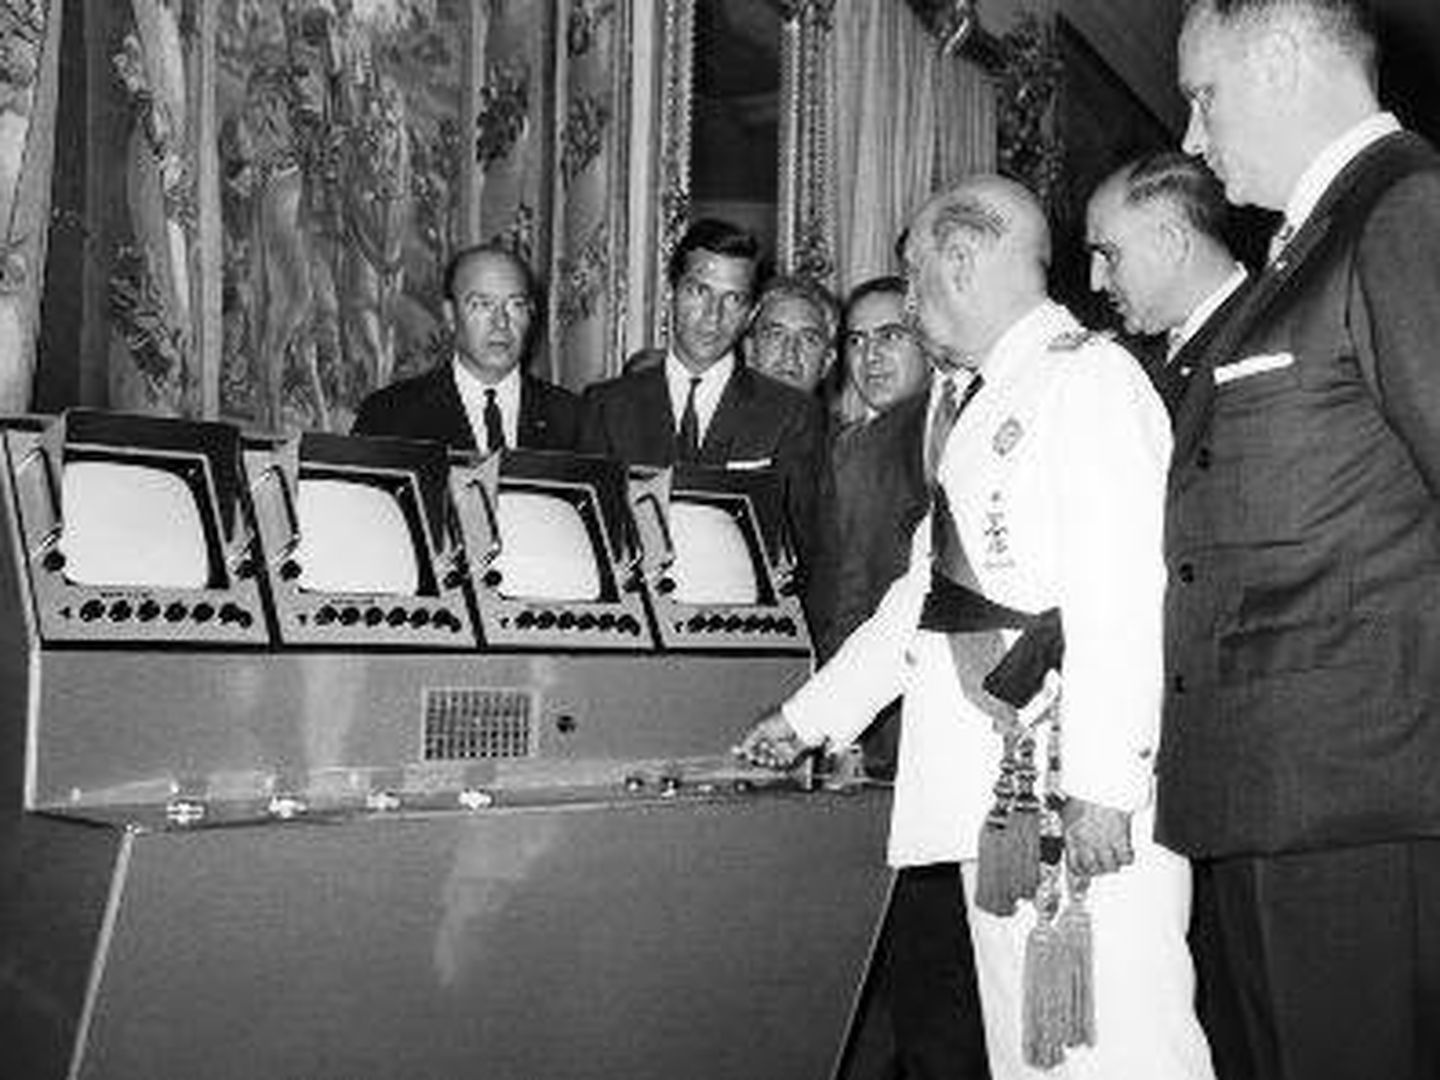 Franco inaugura las emisoras de UHF en 1966 ante la mirada de Suárez, director de la Primera Cadena de TVE. Le acompañan Fraga, Aparicio Bernal y Rosón